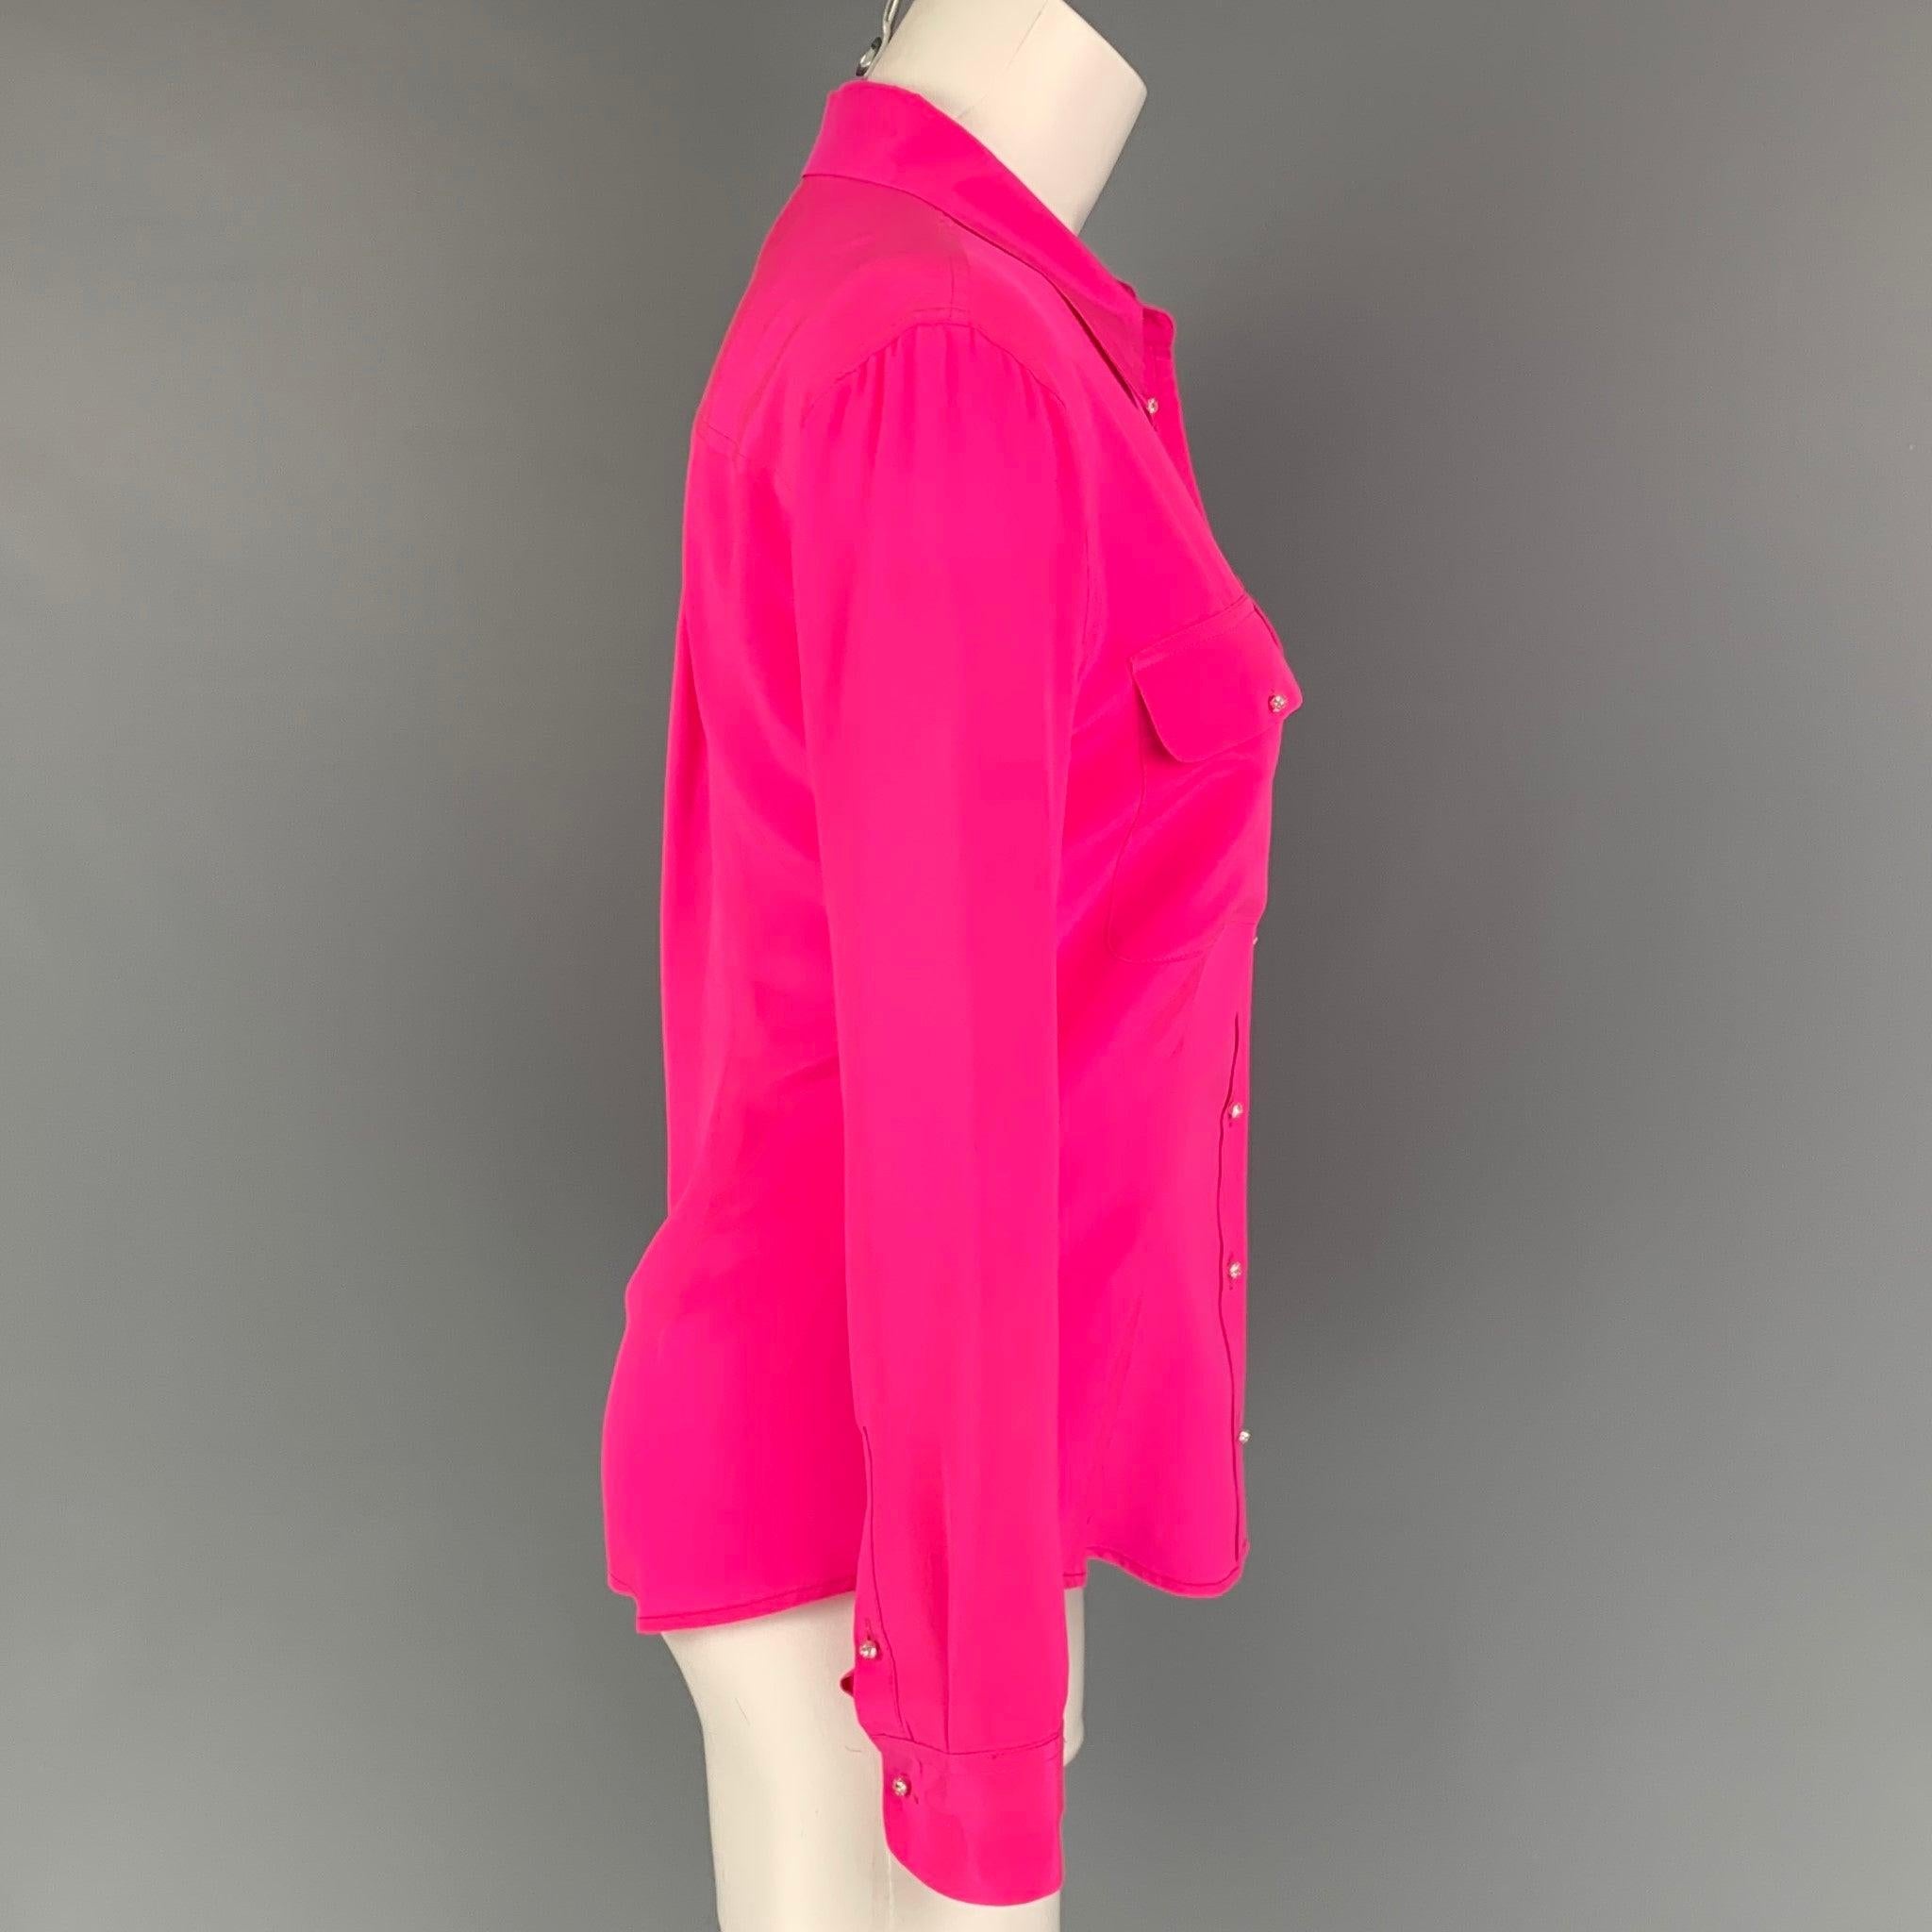 EQUIPMENT Hemd aus rosafarbener Seide mit strassbesetzten Knöpfen, Pattentaschen und einem breiten Kragen.
Sehr gut
Gebrauchtes Zustand. 

Markiert:   S 

Abmessungen: 
 
Schultern: 16 Zoll  Oberweite: 35 Zoll  Ärmel: 24 Zoll  Länge: 25 Zoll 
  
  
